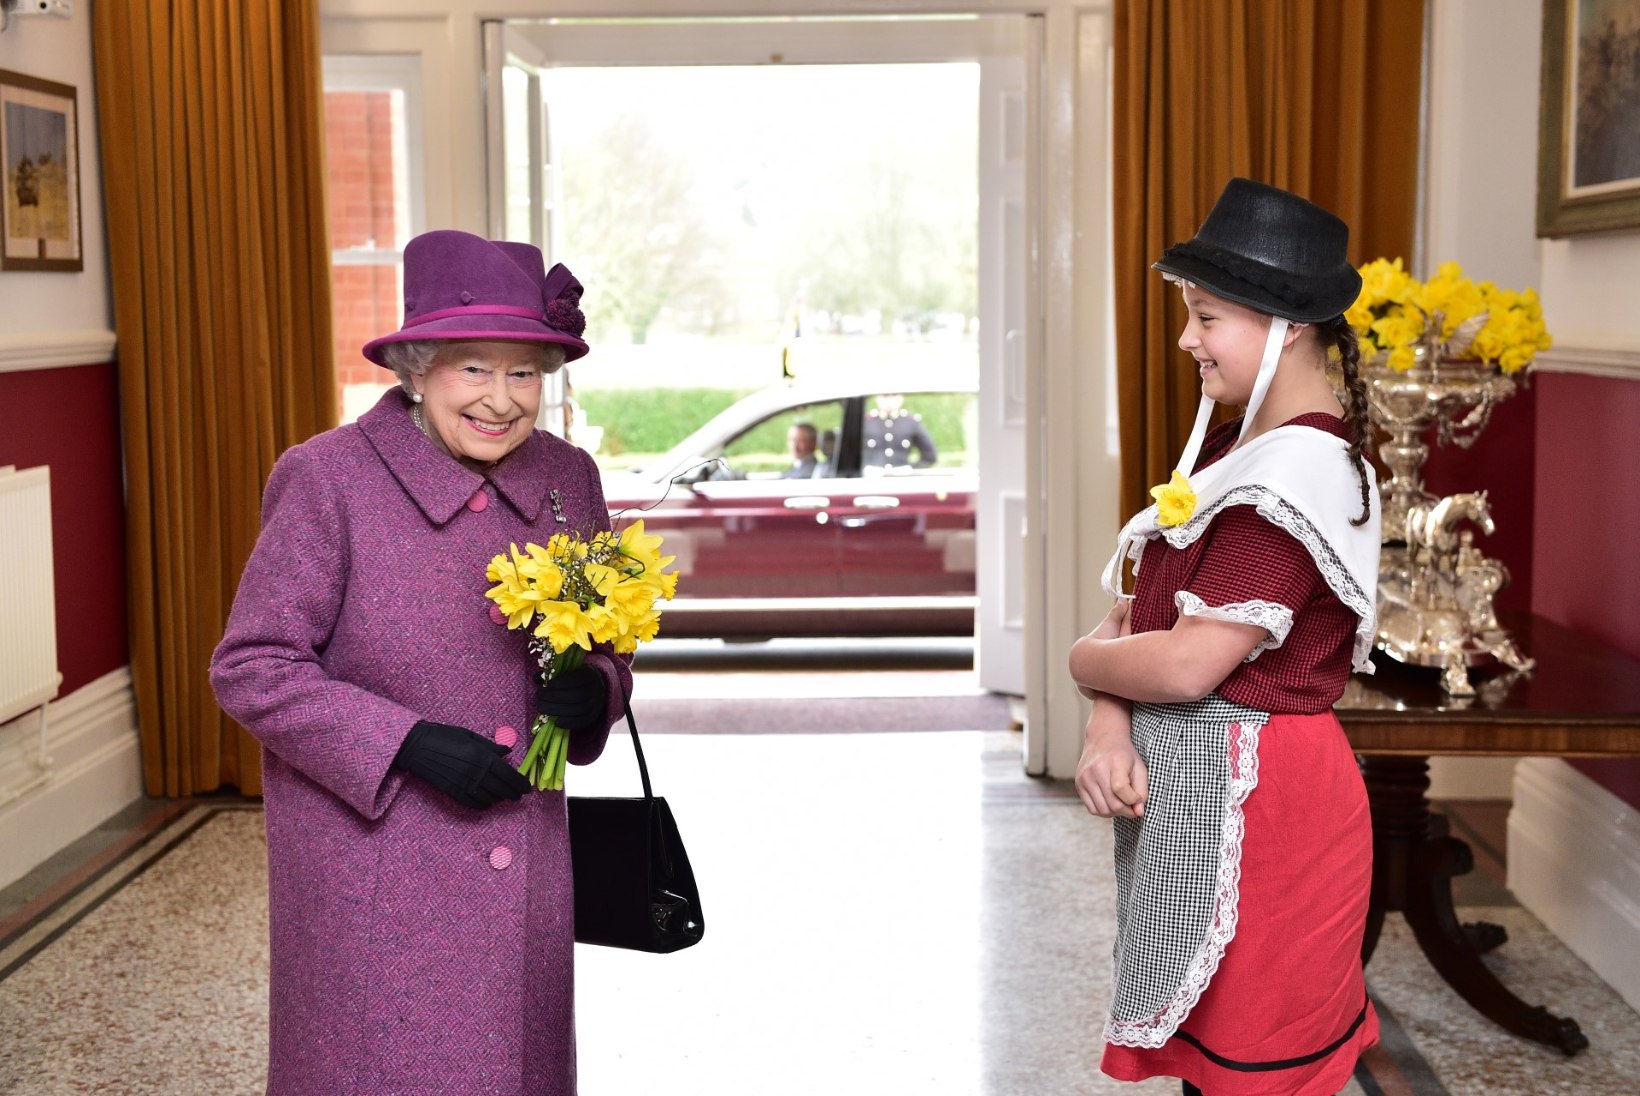 Kuninglikud tavad: Elizabeth II krõbistab hommikul küpsiseid ja lõpetab päeva šampanjaga